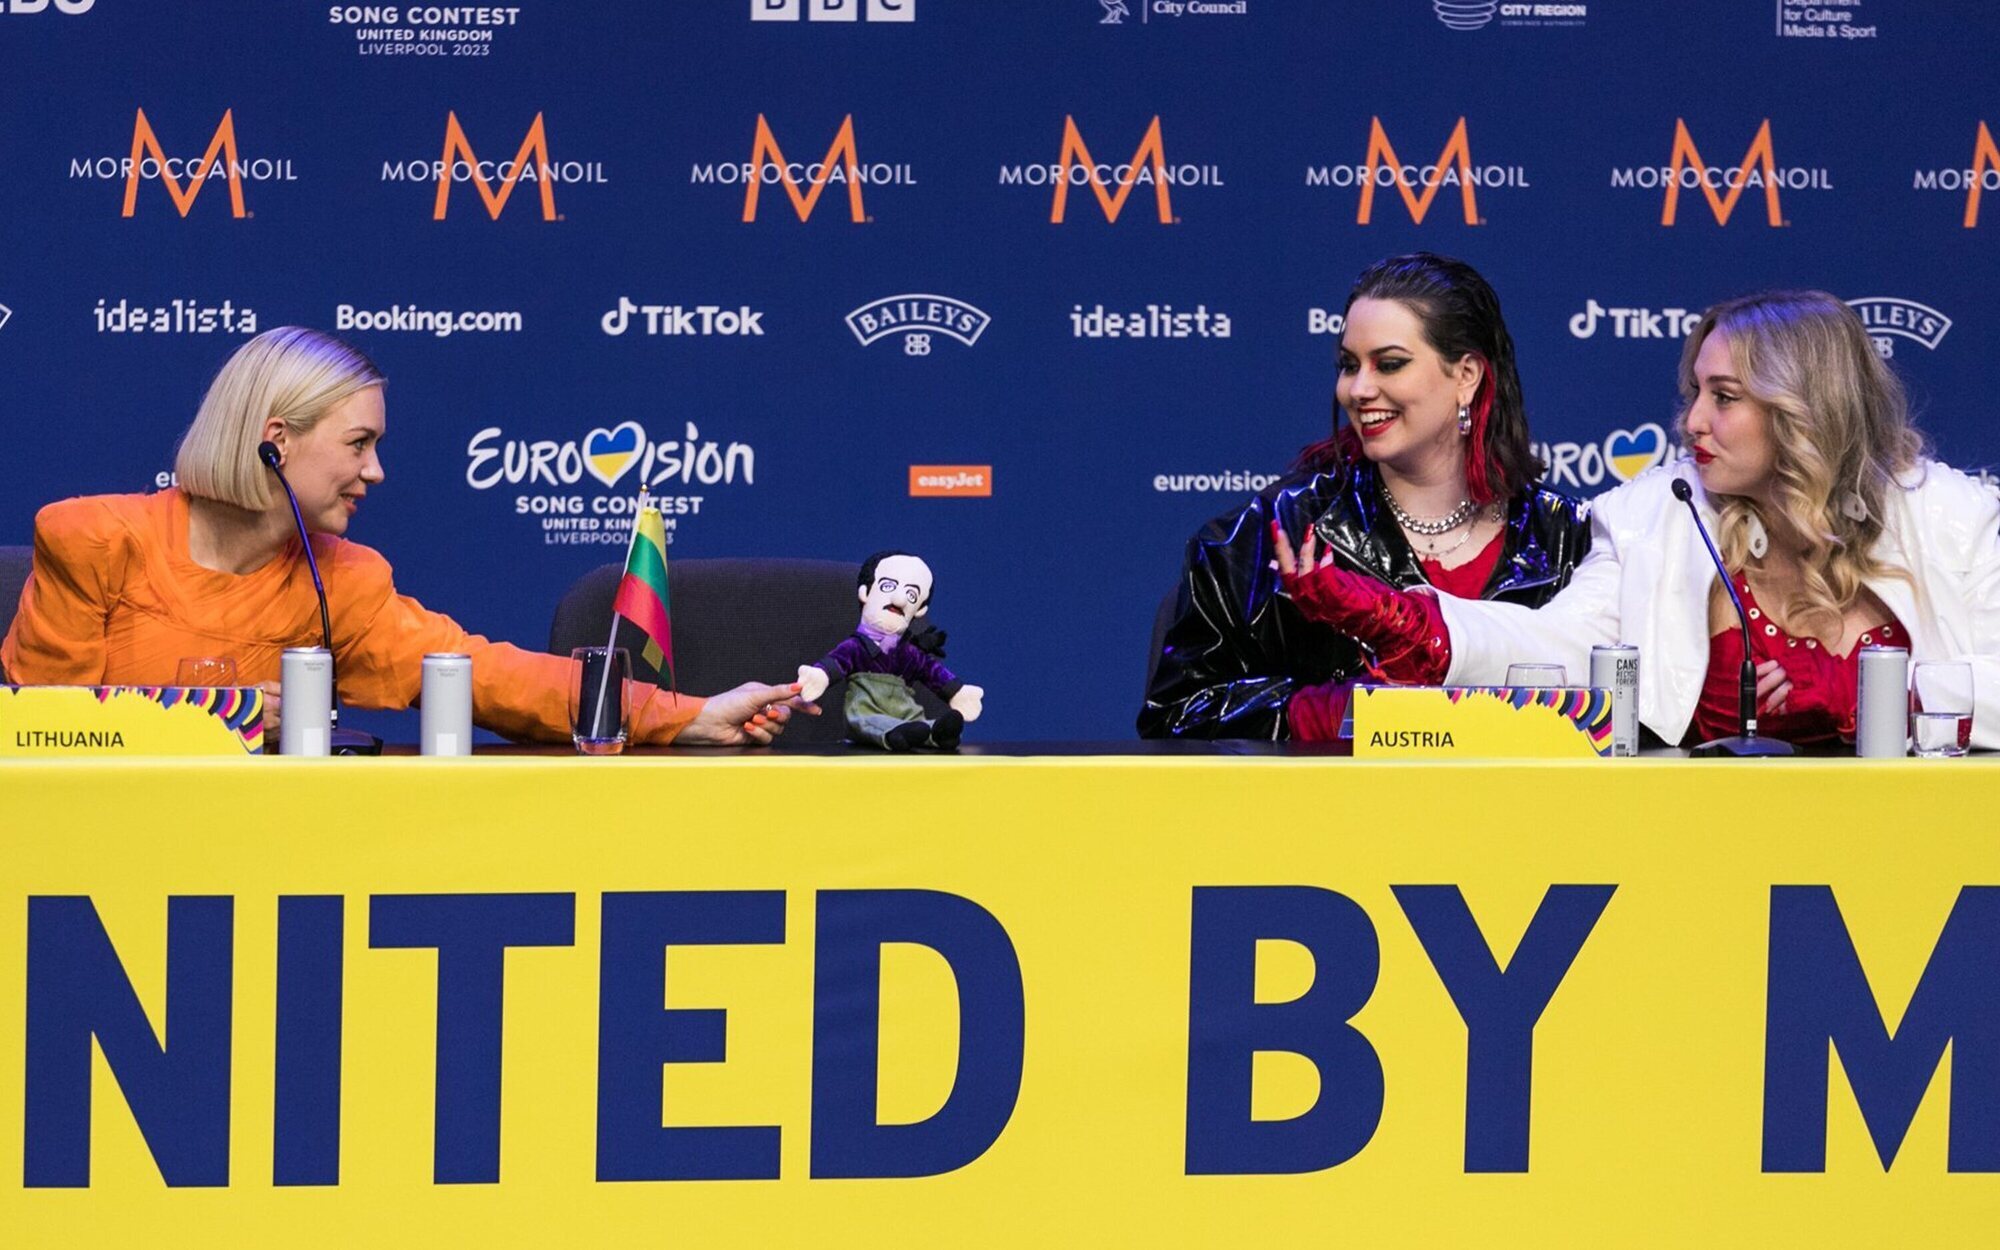 Teya y Salena, representantes de Austria, tras la semi 2 de Eurovisión: "El apoyo nos permitió ser auténticas"